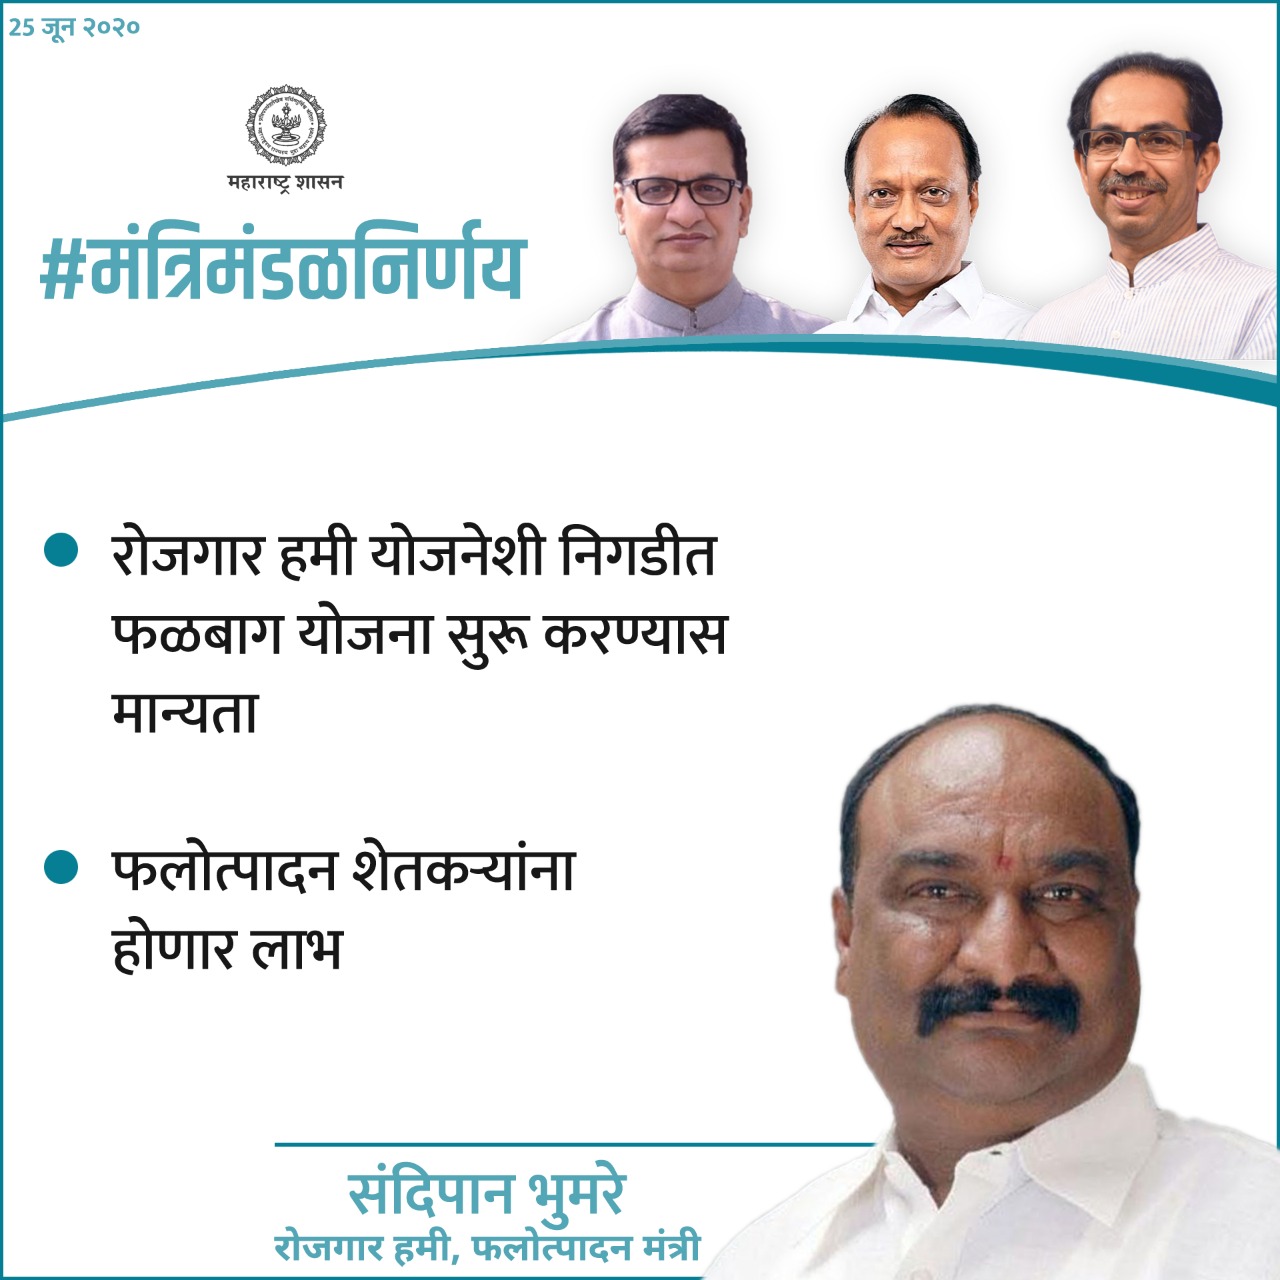 रोजगार हमी योजनेशी निगडीत फळबाग योजना सुरू करण्यास मान्यता. फलोत्पादन शेतकऱ्यांना होणार लाभ. (Courtesy: CMO Maharashtra)